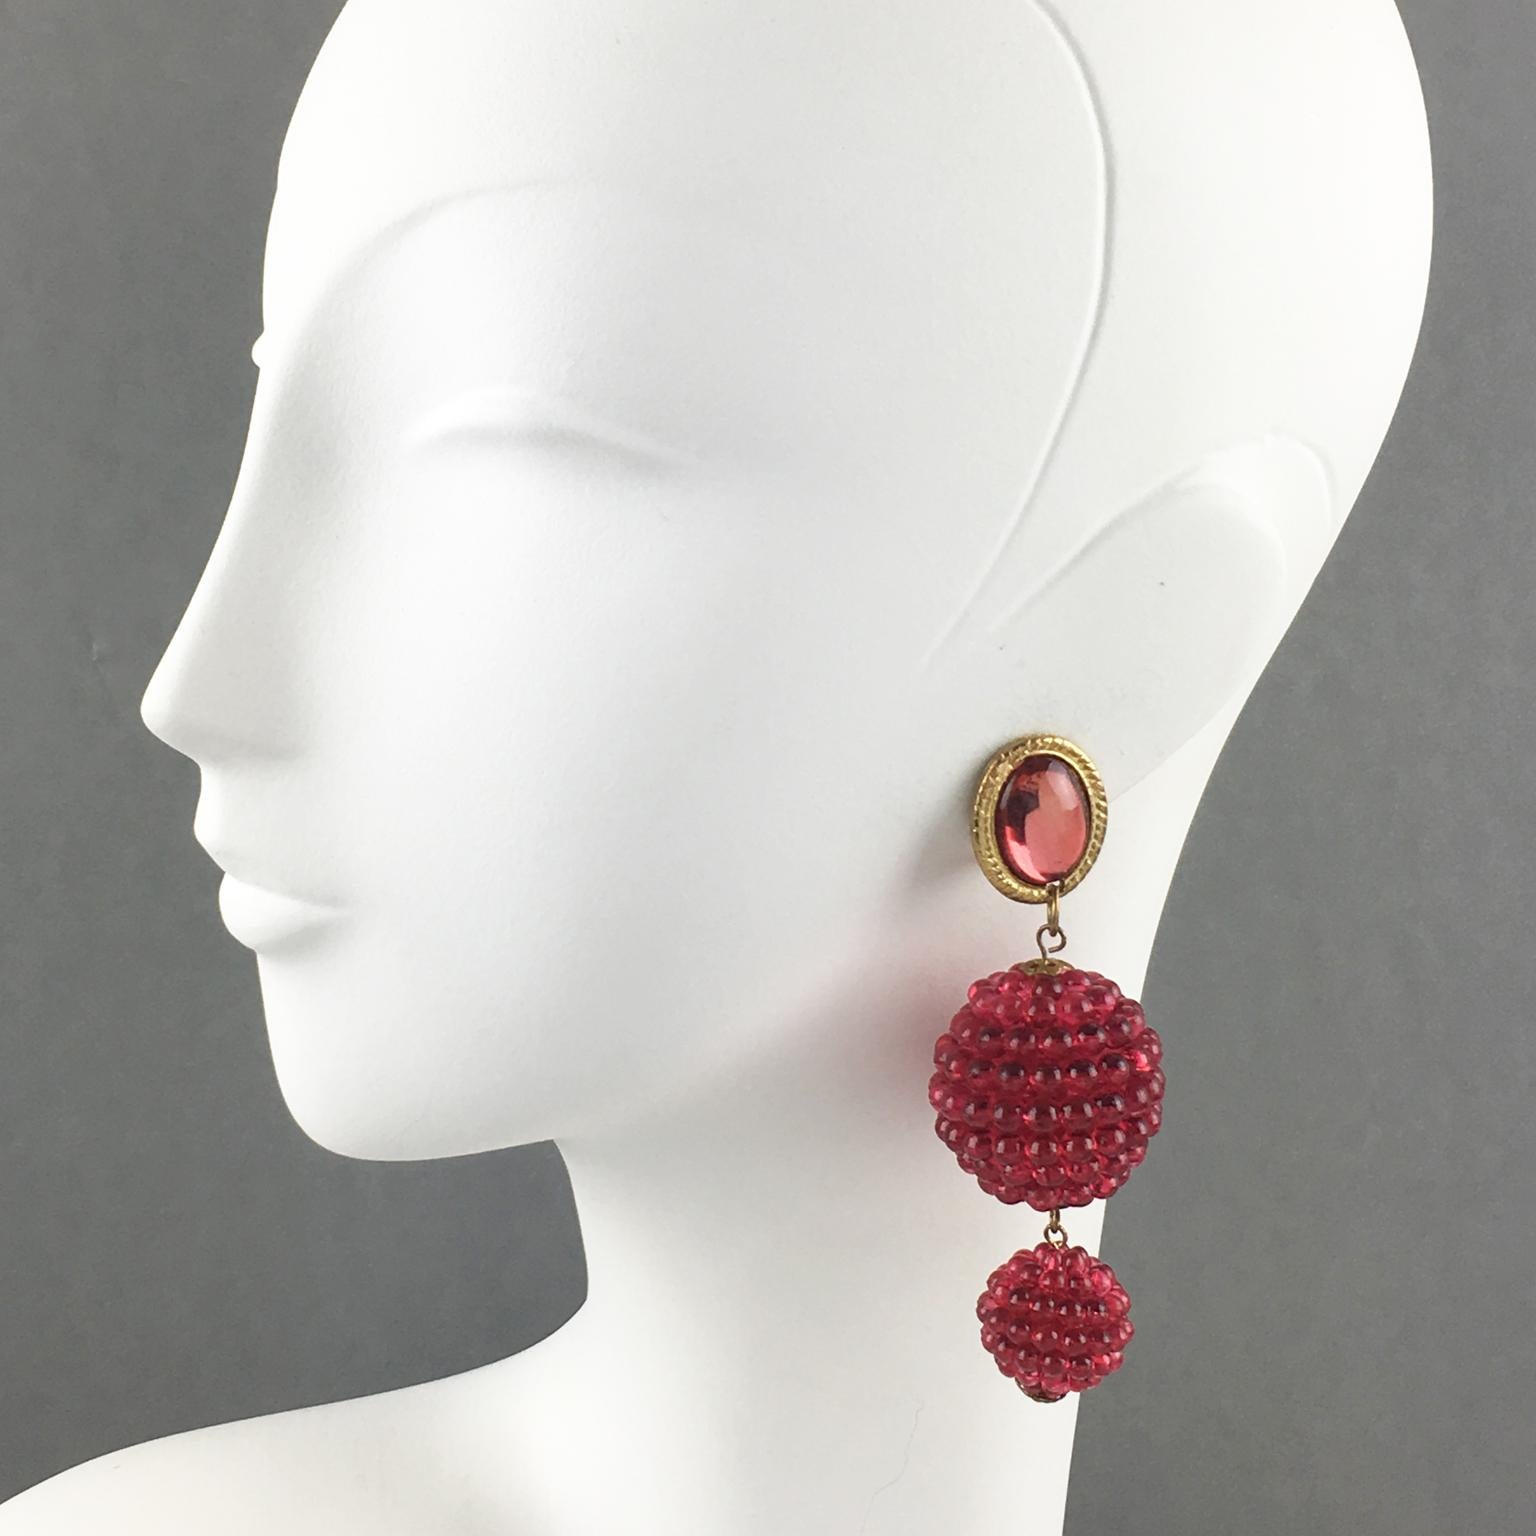 Diese hübschen, baumelnden Clip-Ohrringe haben ein verspieltes Design mit strukturierten, himbeerförmigen Lucite-Perlen in einer transparenten fuchsia-pinken Farbe. Die lange, baumelnde Form ist mit vergoldeten Metallbeschlägen versehen und wird von